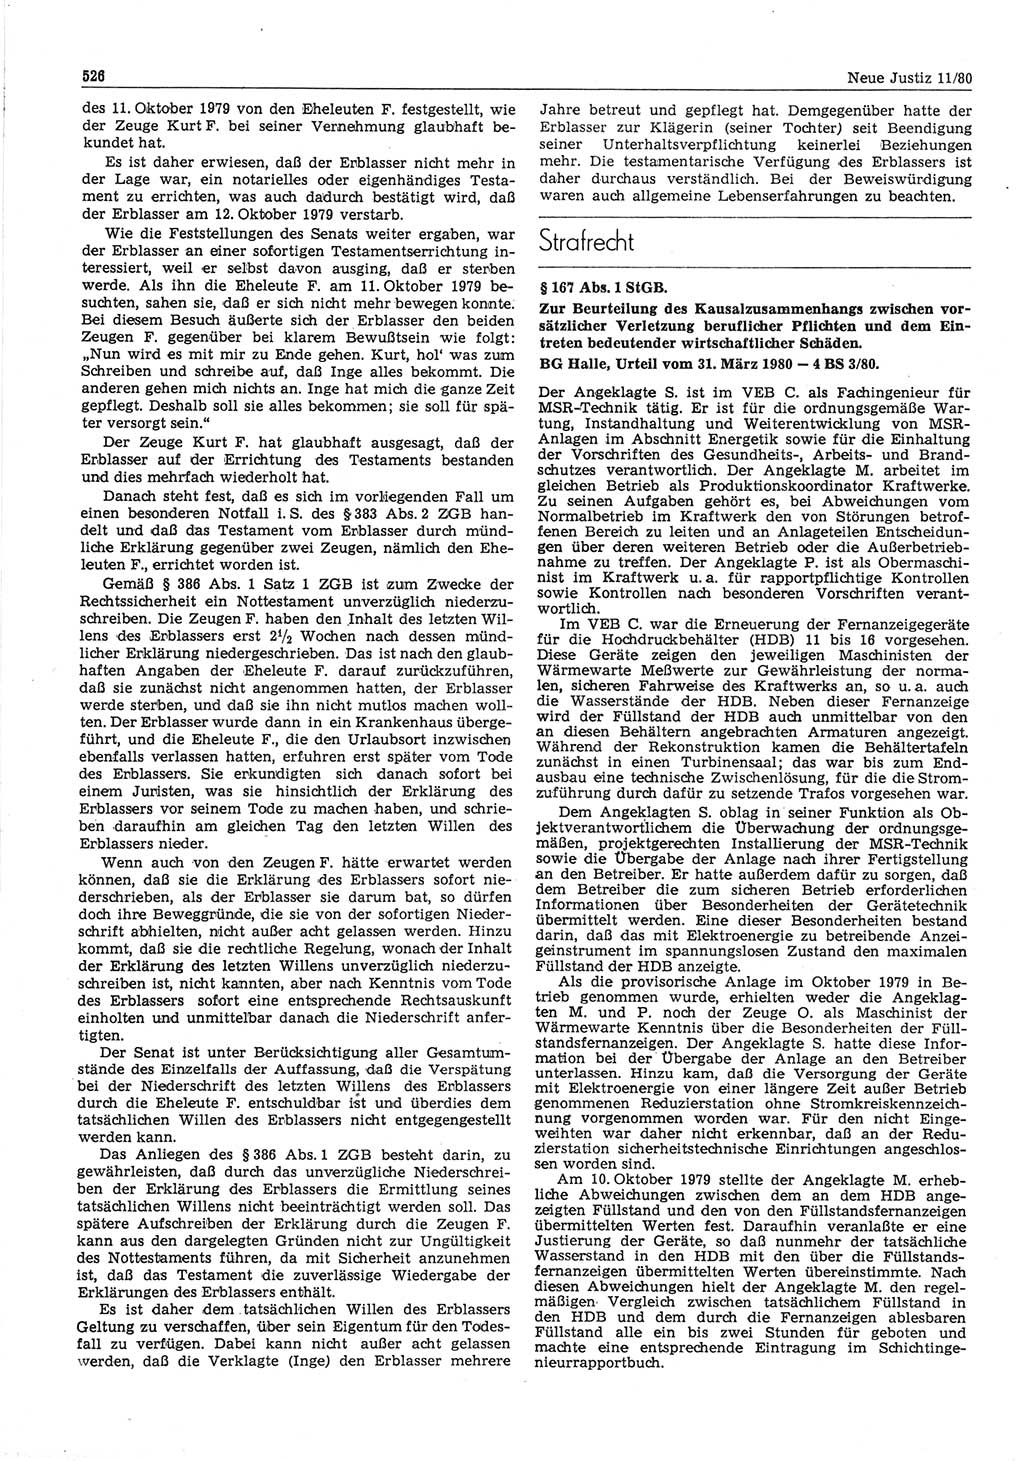 Neue Justiz (NJ), Zeitschrift für sozialistisches Recht und Gesetzlichkeit [Deutsche Demokratische Republik (DDR)], 34. Jahrgang 1980, Seite 526 (NJ DDR 1980, S. 526)